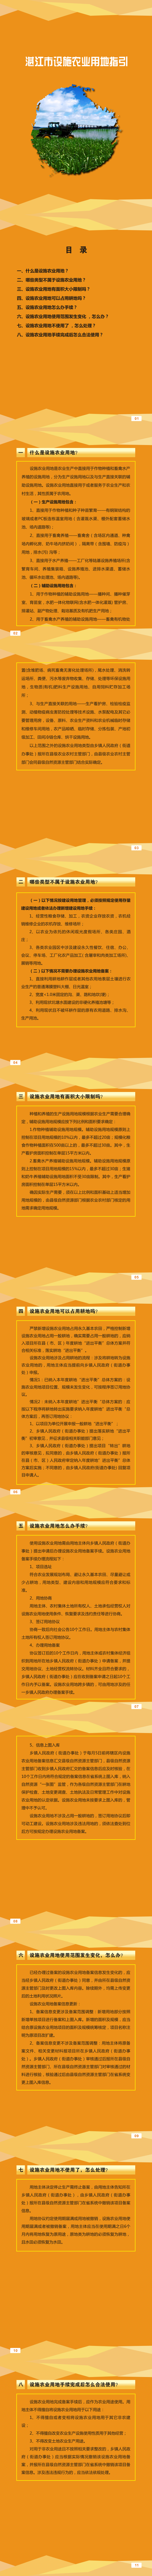 湛江市设施农业用地指引（小册子）_1_12.png